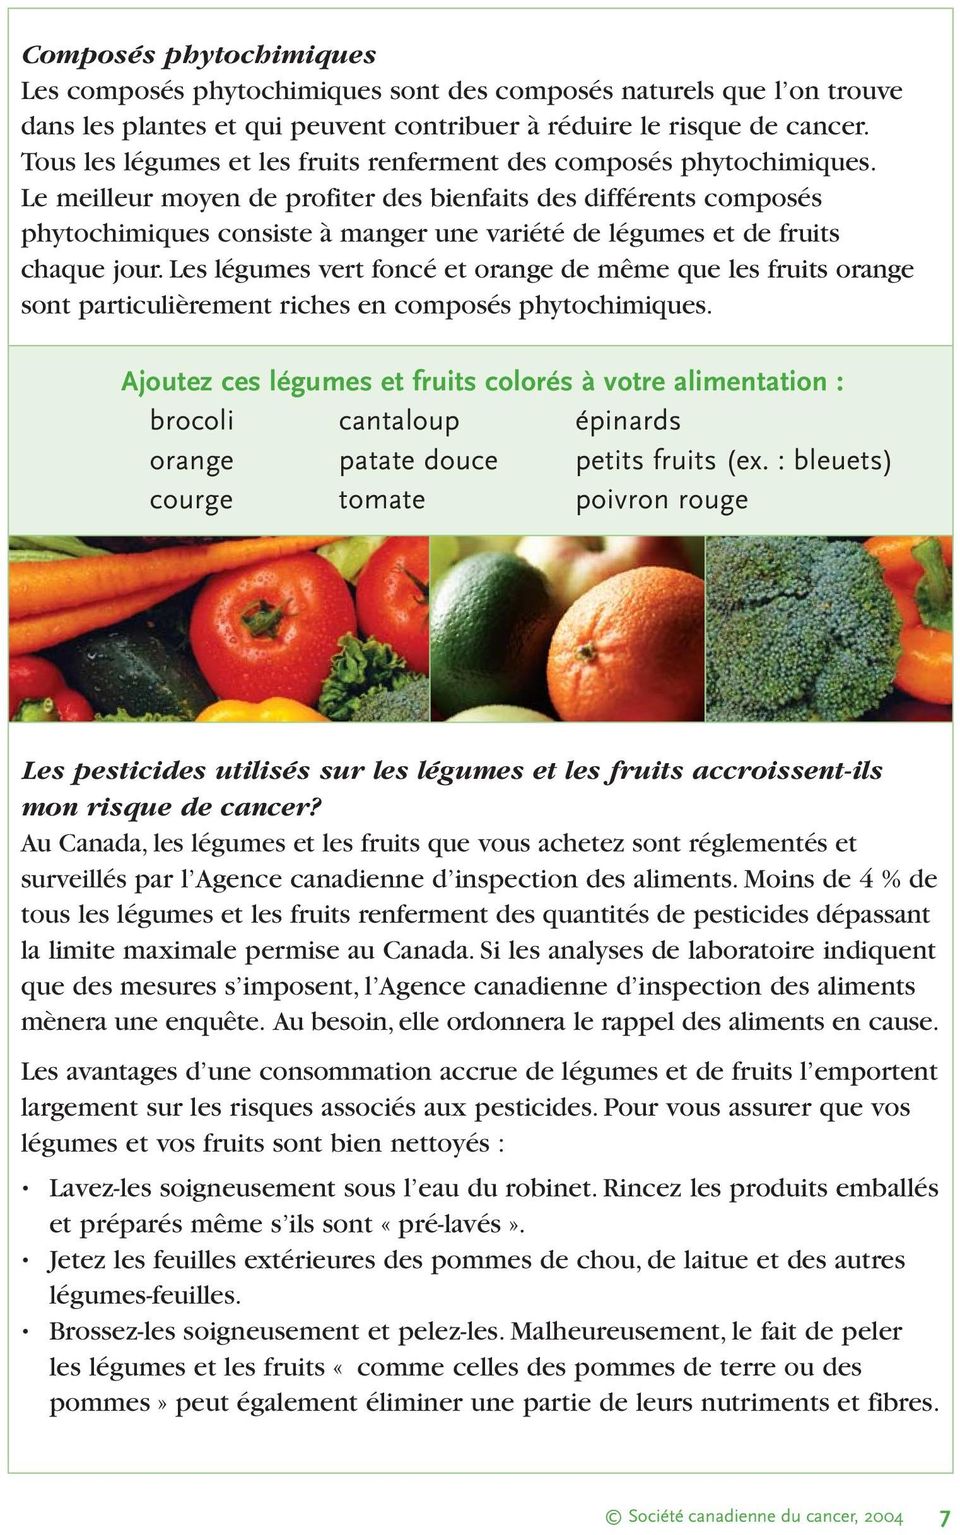 Le meilleur moyen de profiter des bienfaits des différents composés phytochimiques consiste à manger une variété de légumes et de fruits chaque jour.